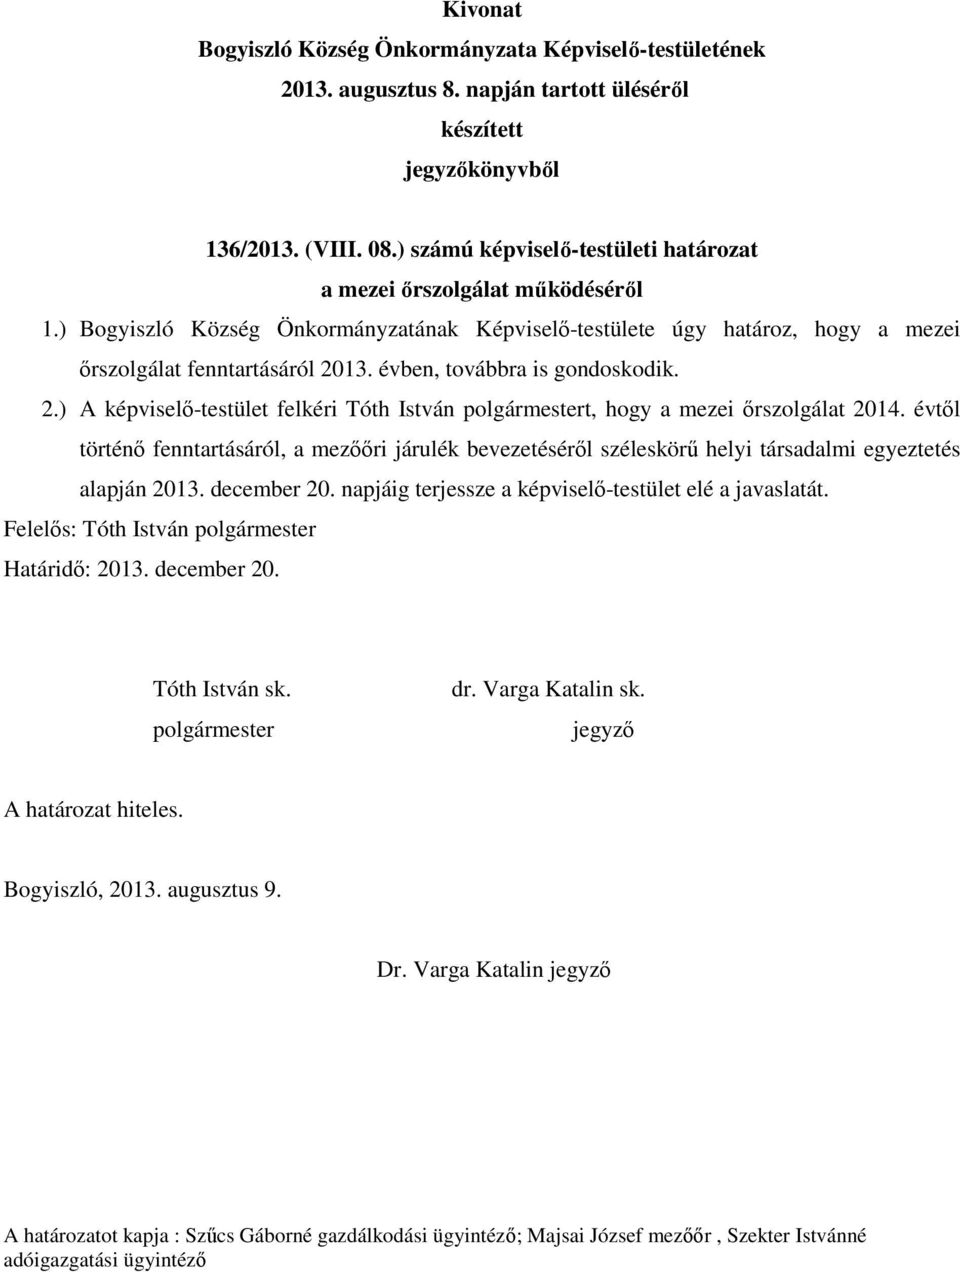 13. évben, továbbra is gondoskodik. 2.) A képviselő-testület felkéri Tóth István t, hogy a mezei őrszolgálat 2014.